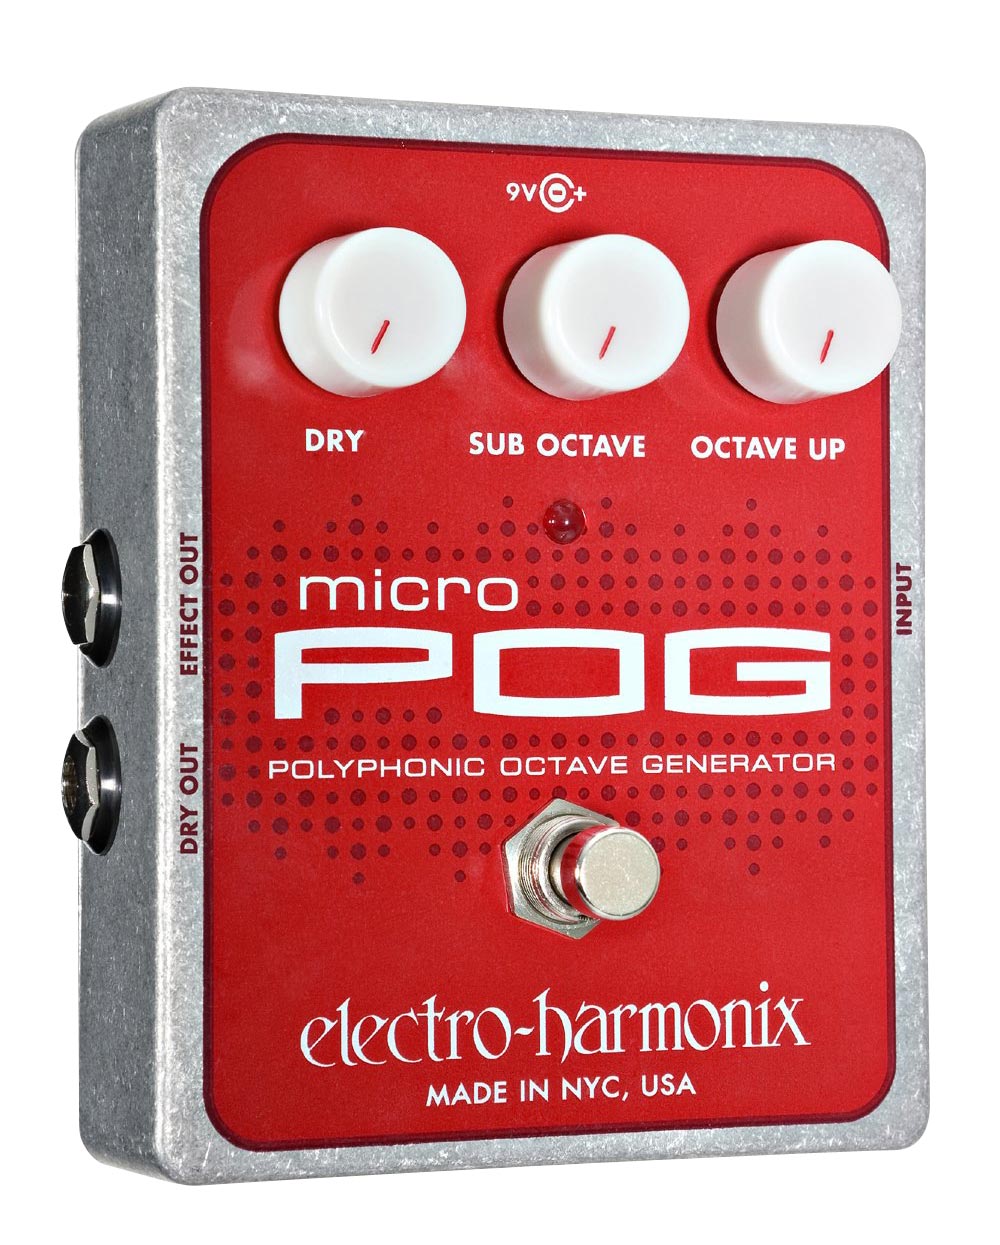 Electro-Harmonix Micro Pog